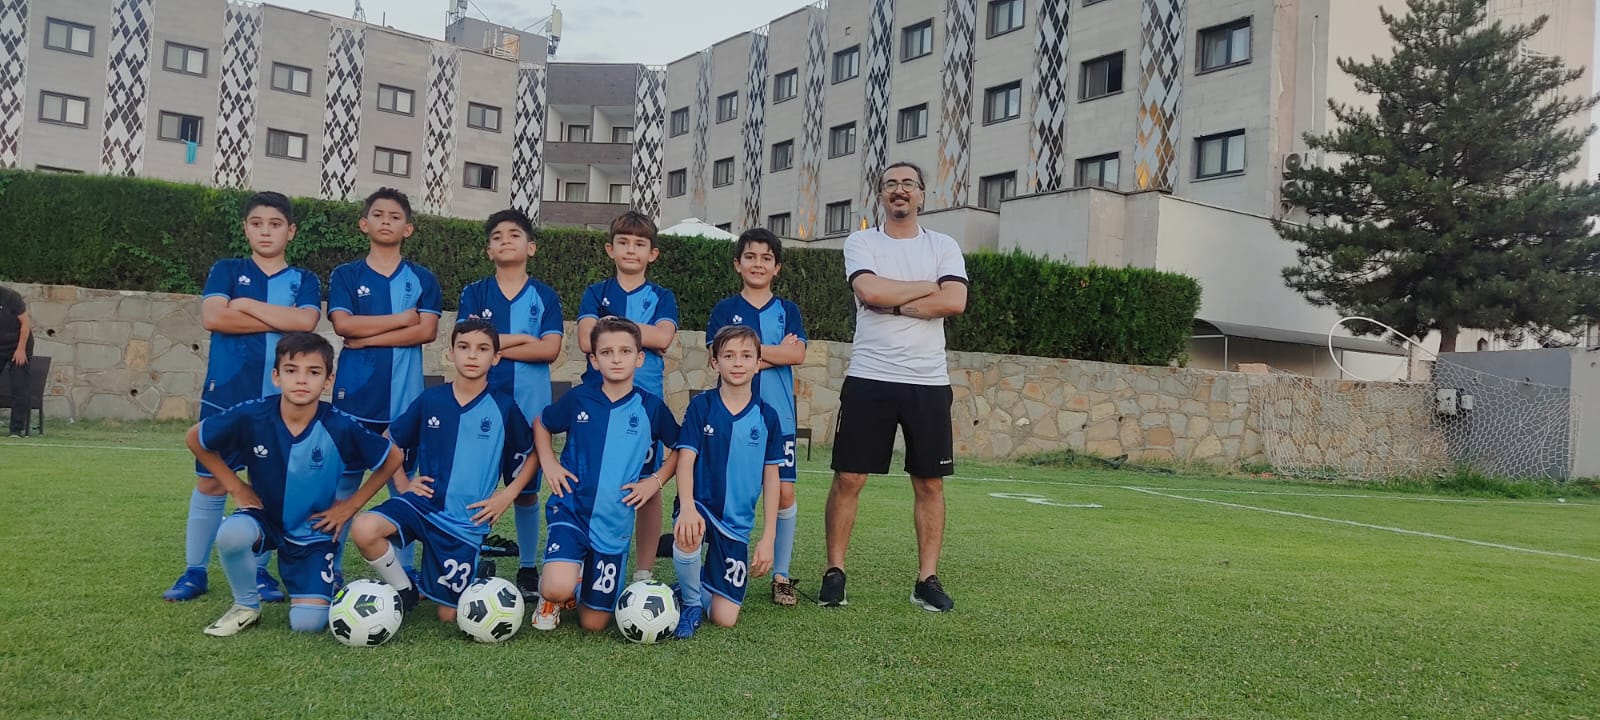 Çankırı Belediyesi Futbol Takımı, İç Anadolu Futbol Şenliği’nde 2. oldu